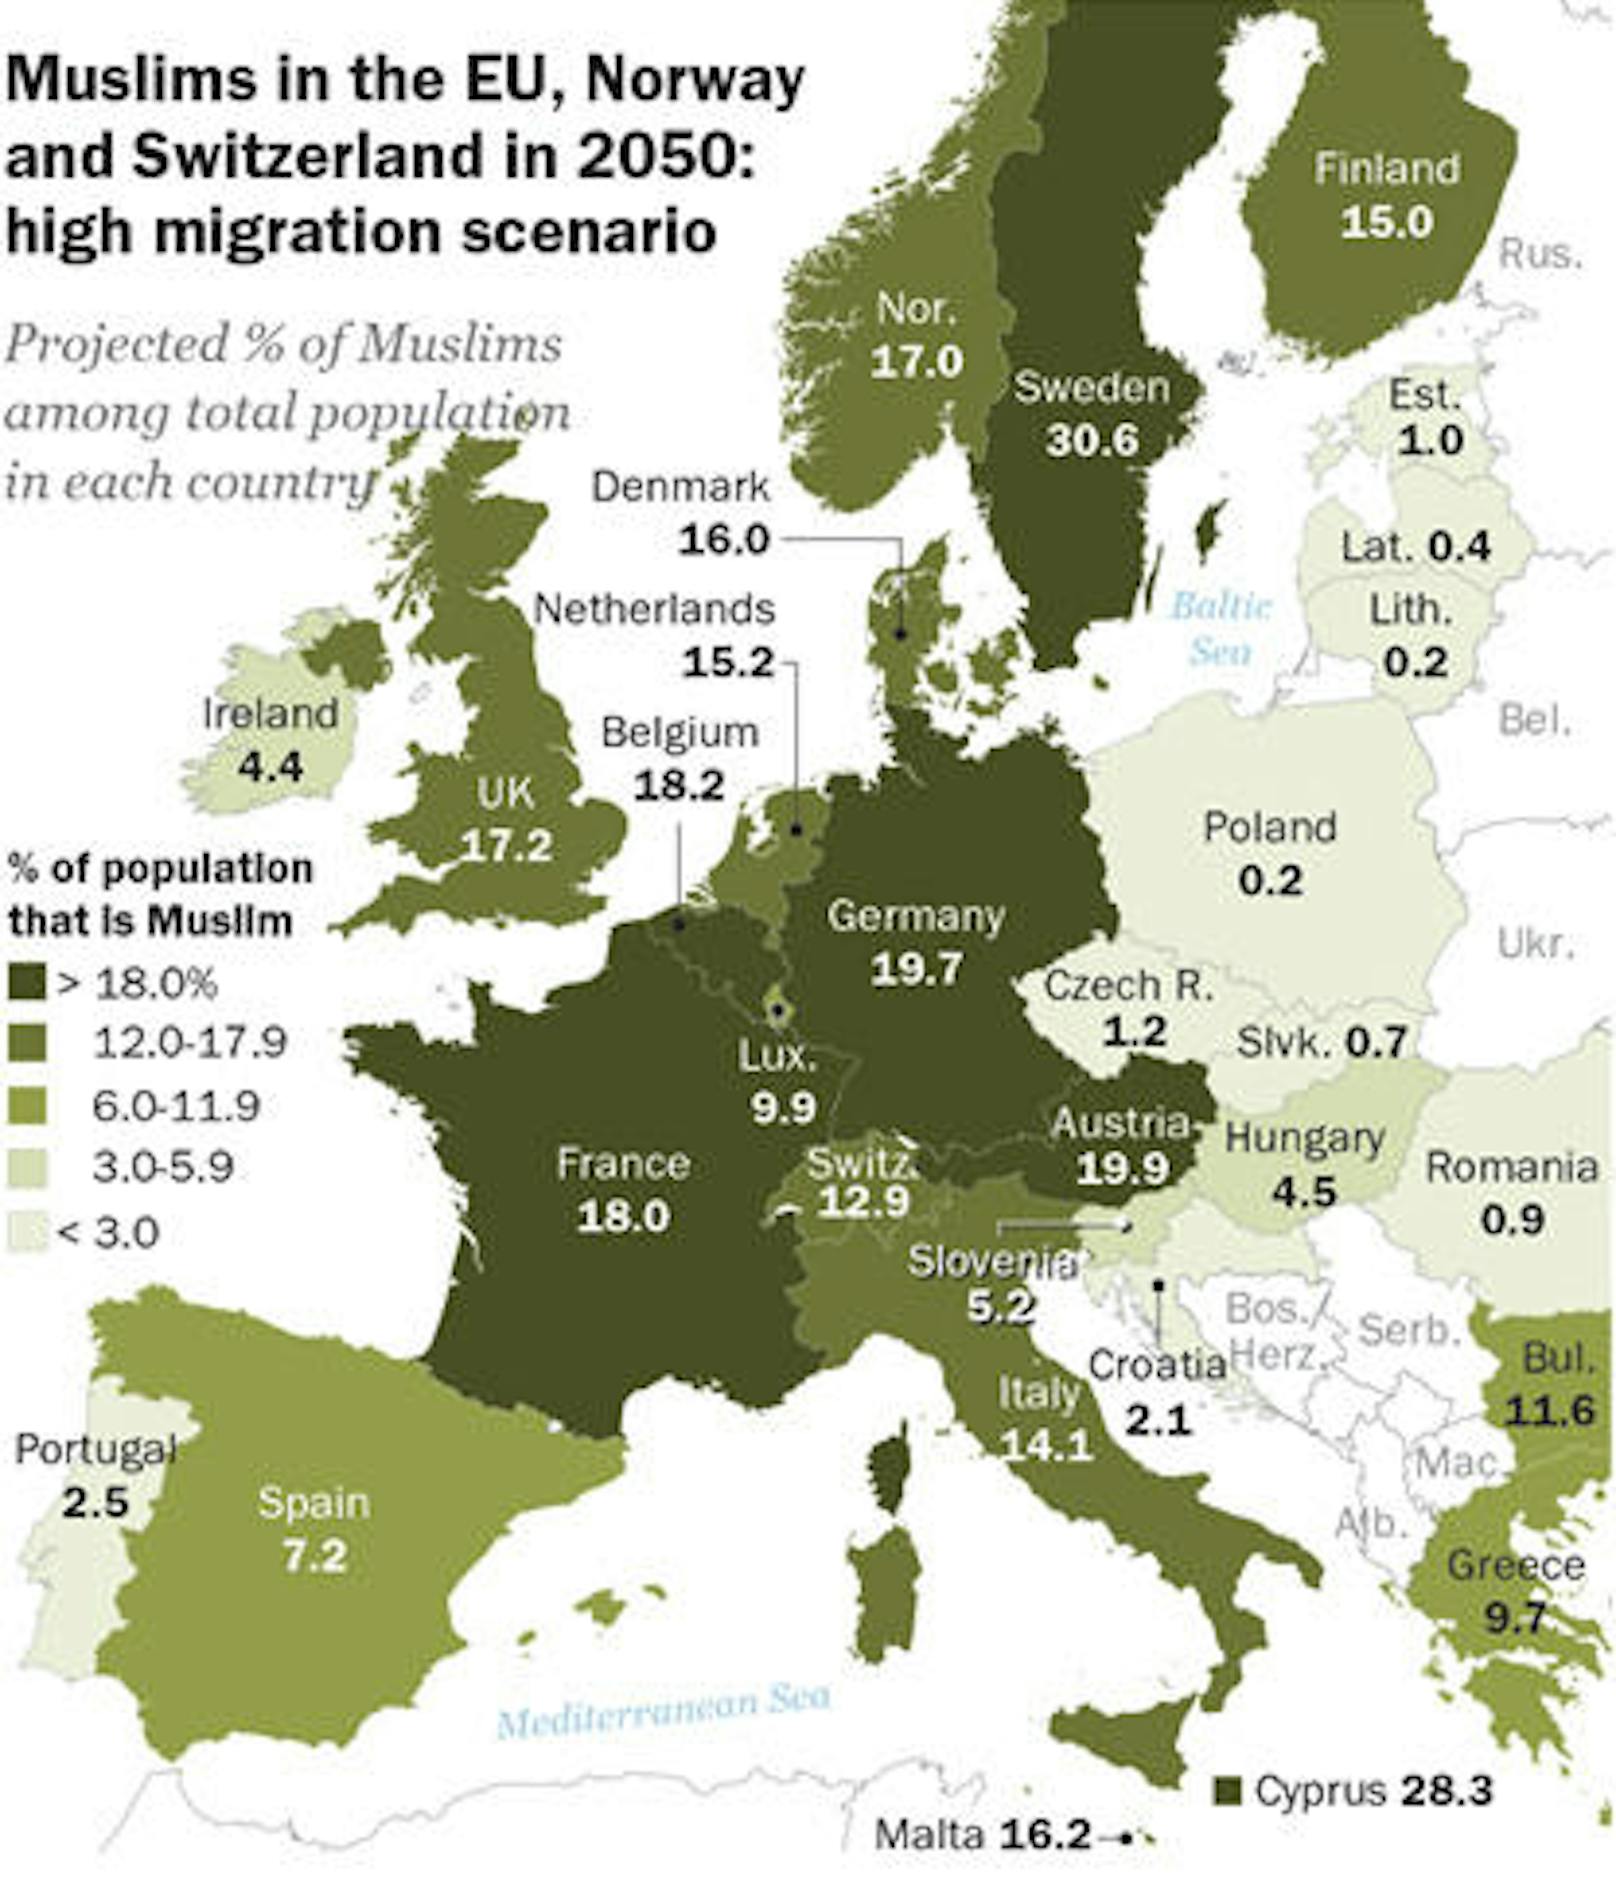 Bei einem Szenario, in dem so viele Migranten wie in den Spitzenjahren 2014-16 kommen würden, könnte der Anteil auf 14 Prozent steigen. In Schweden wären dann mehr als 30 Prozent der Bewohner Muslime, in Deutschland 19,7 Prozent, in Österreich mit knapp 20 Prozent am meisten.